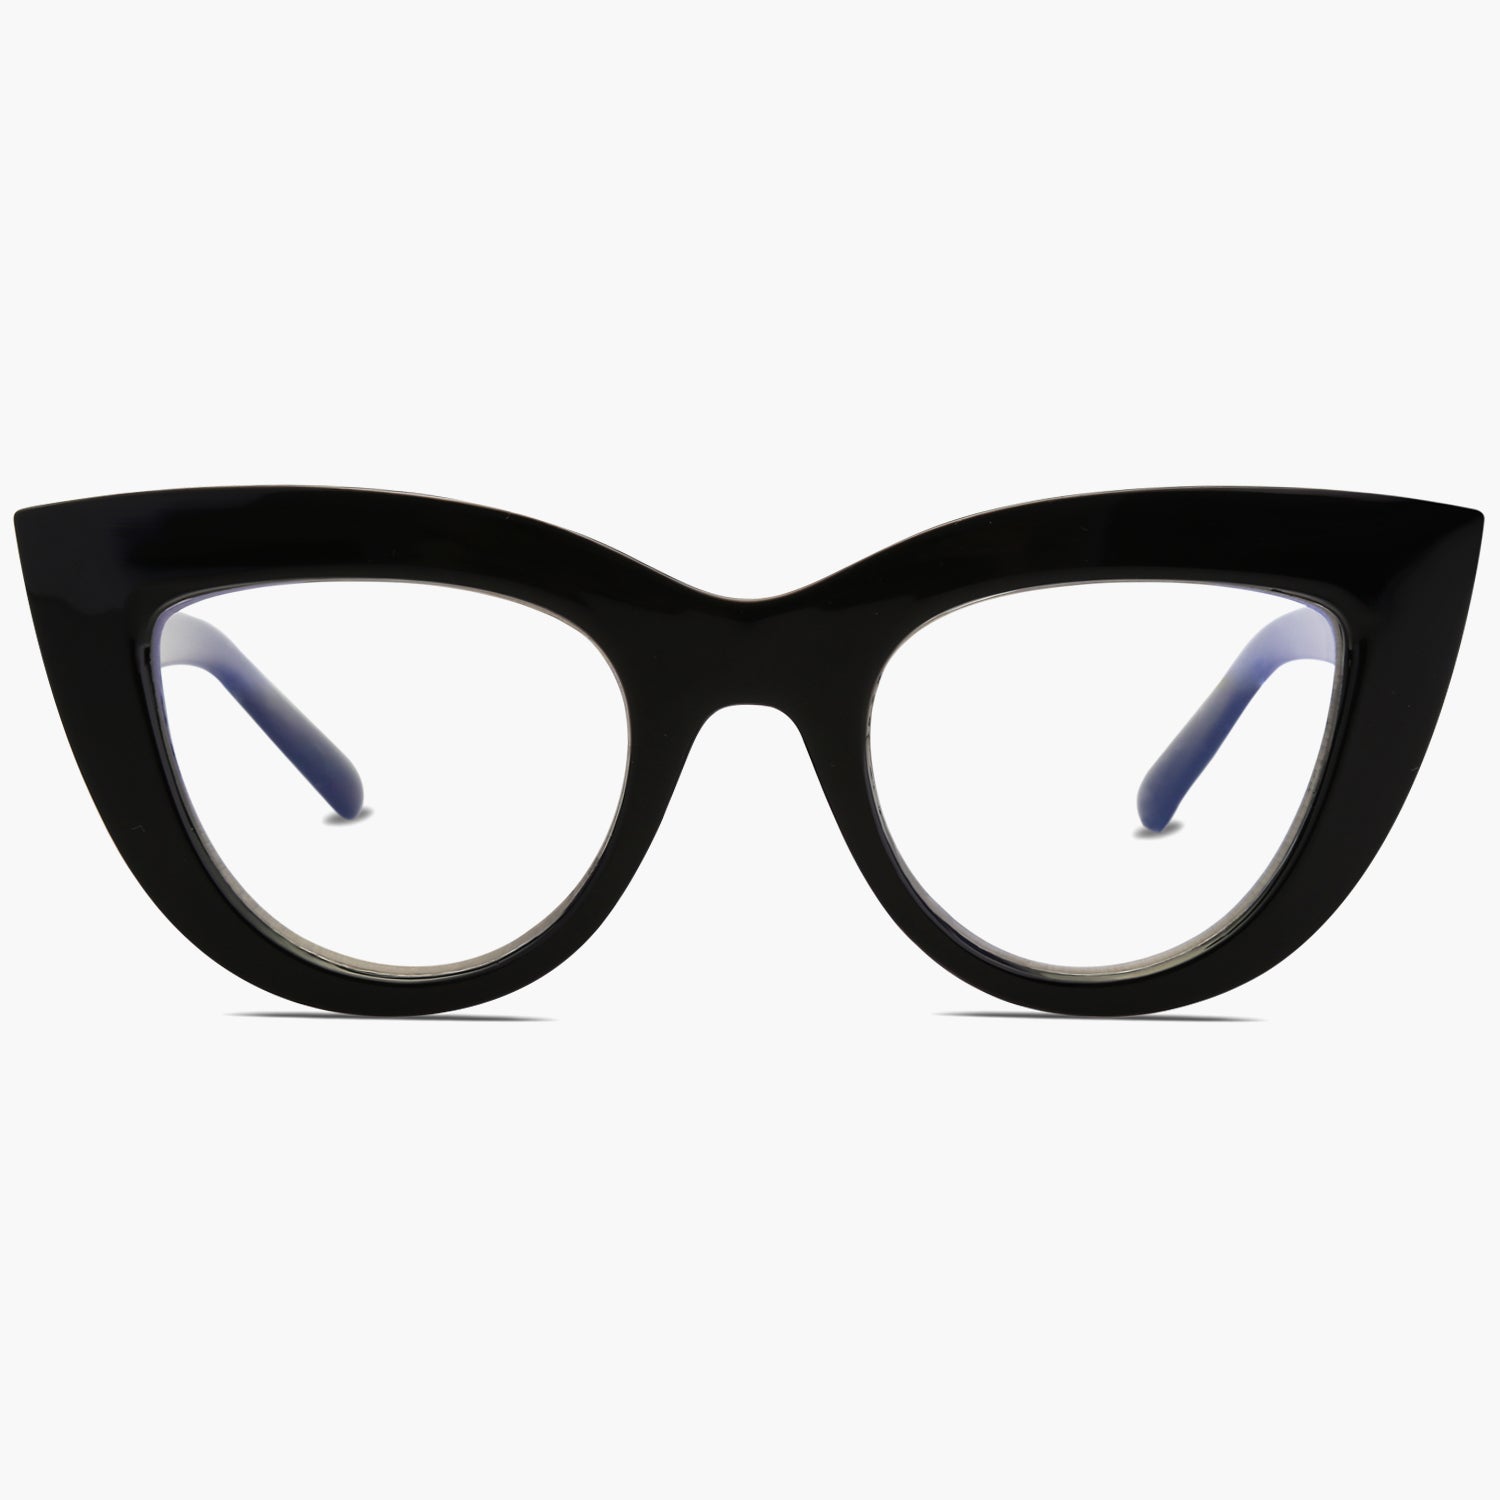 SOJOS Cat Eye Mirrored Flat Lenses Ultra Thin Light Metal Frame Women  Sunglasses SJ1022